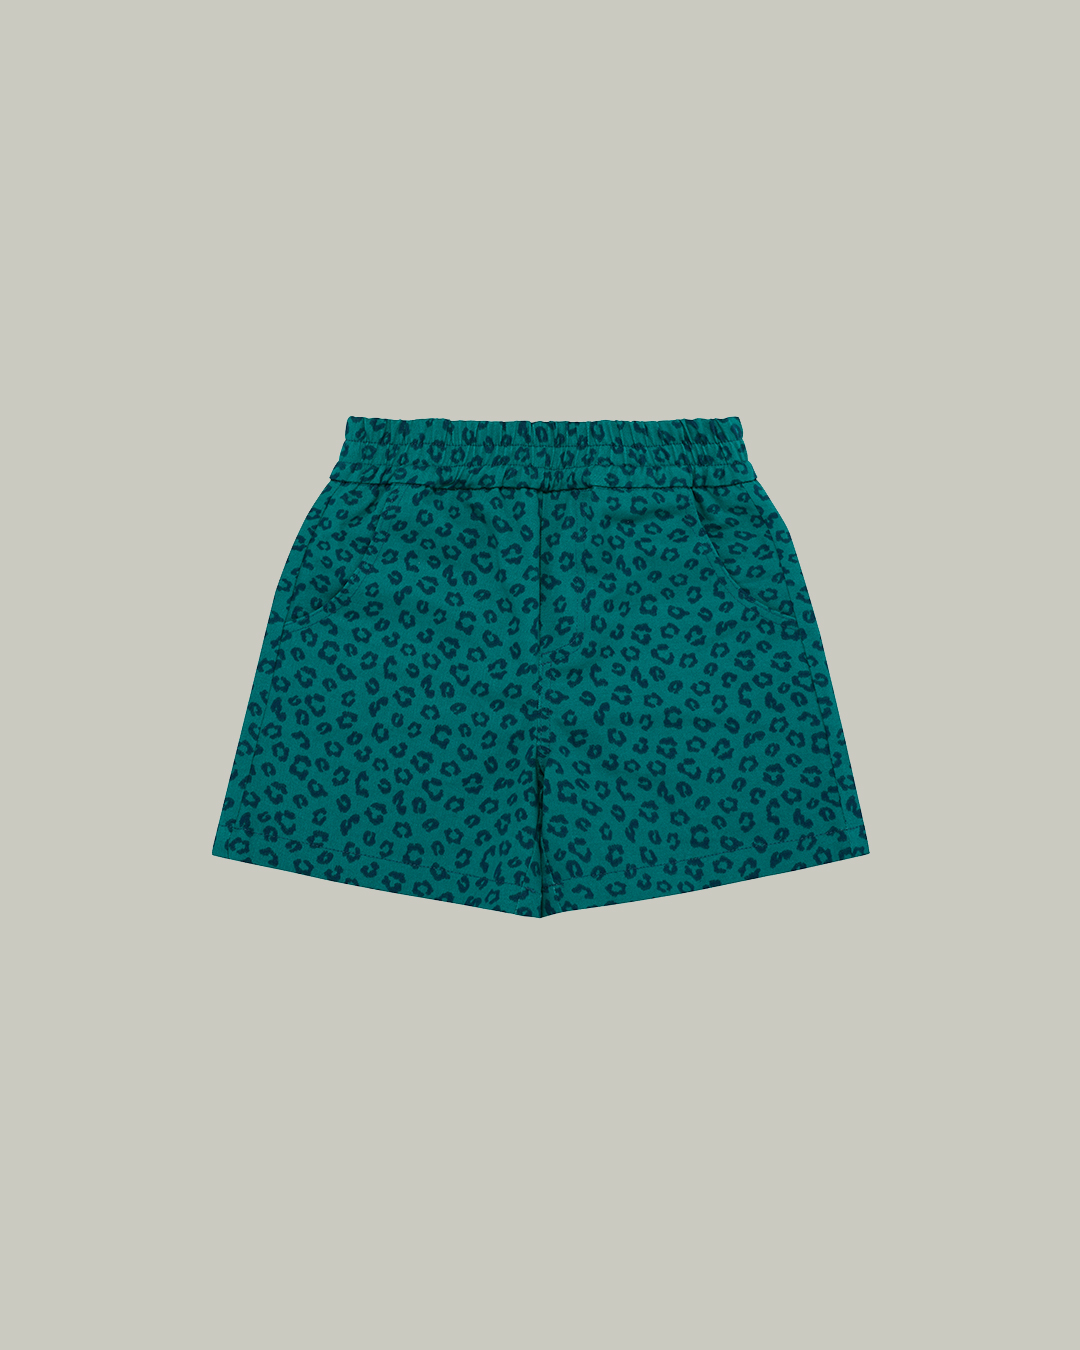 (sold out) Serengeti Shorts